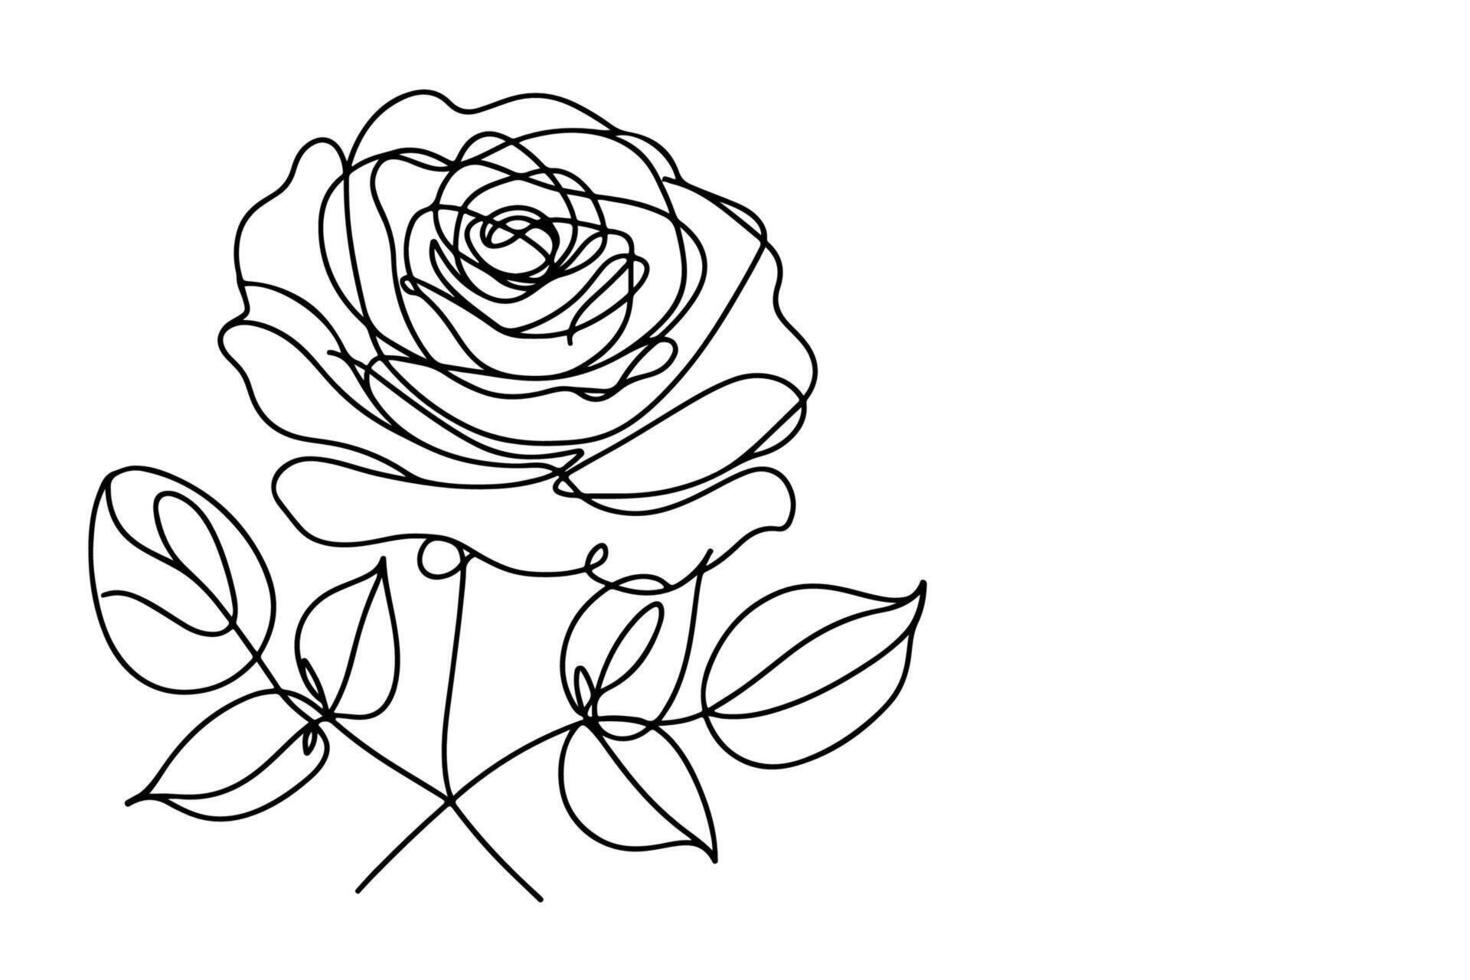 kontinuierlich einer schwarz Linie Kunst Zeichnung schön Rose Gliederung Gekritzel Färbung Vektor Illustration auf Weiß Hintergrund